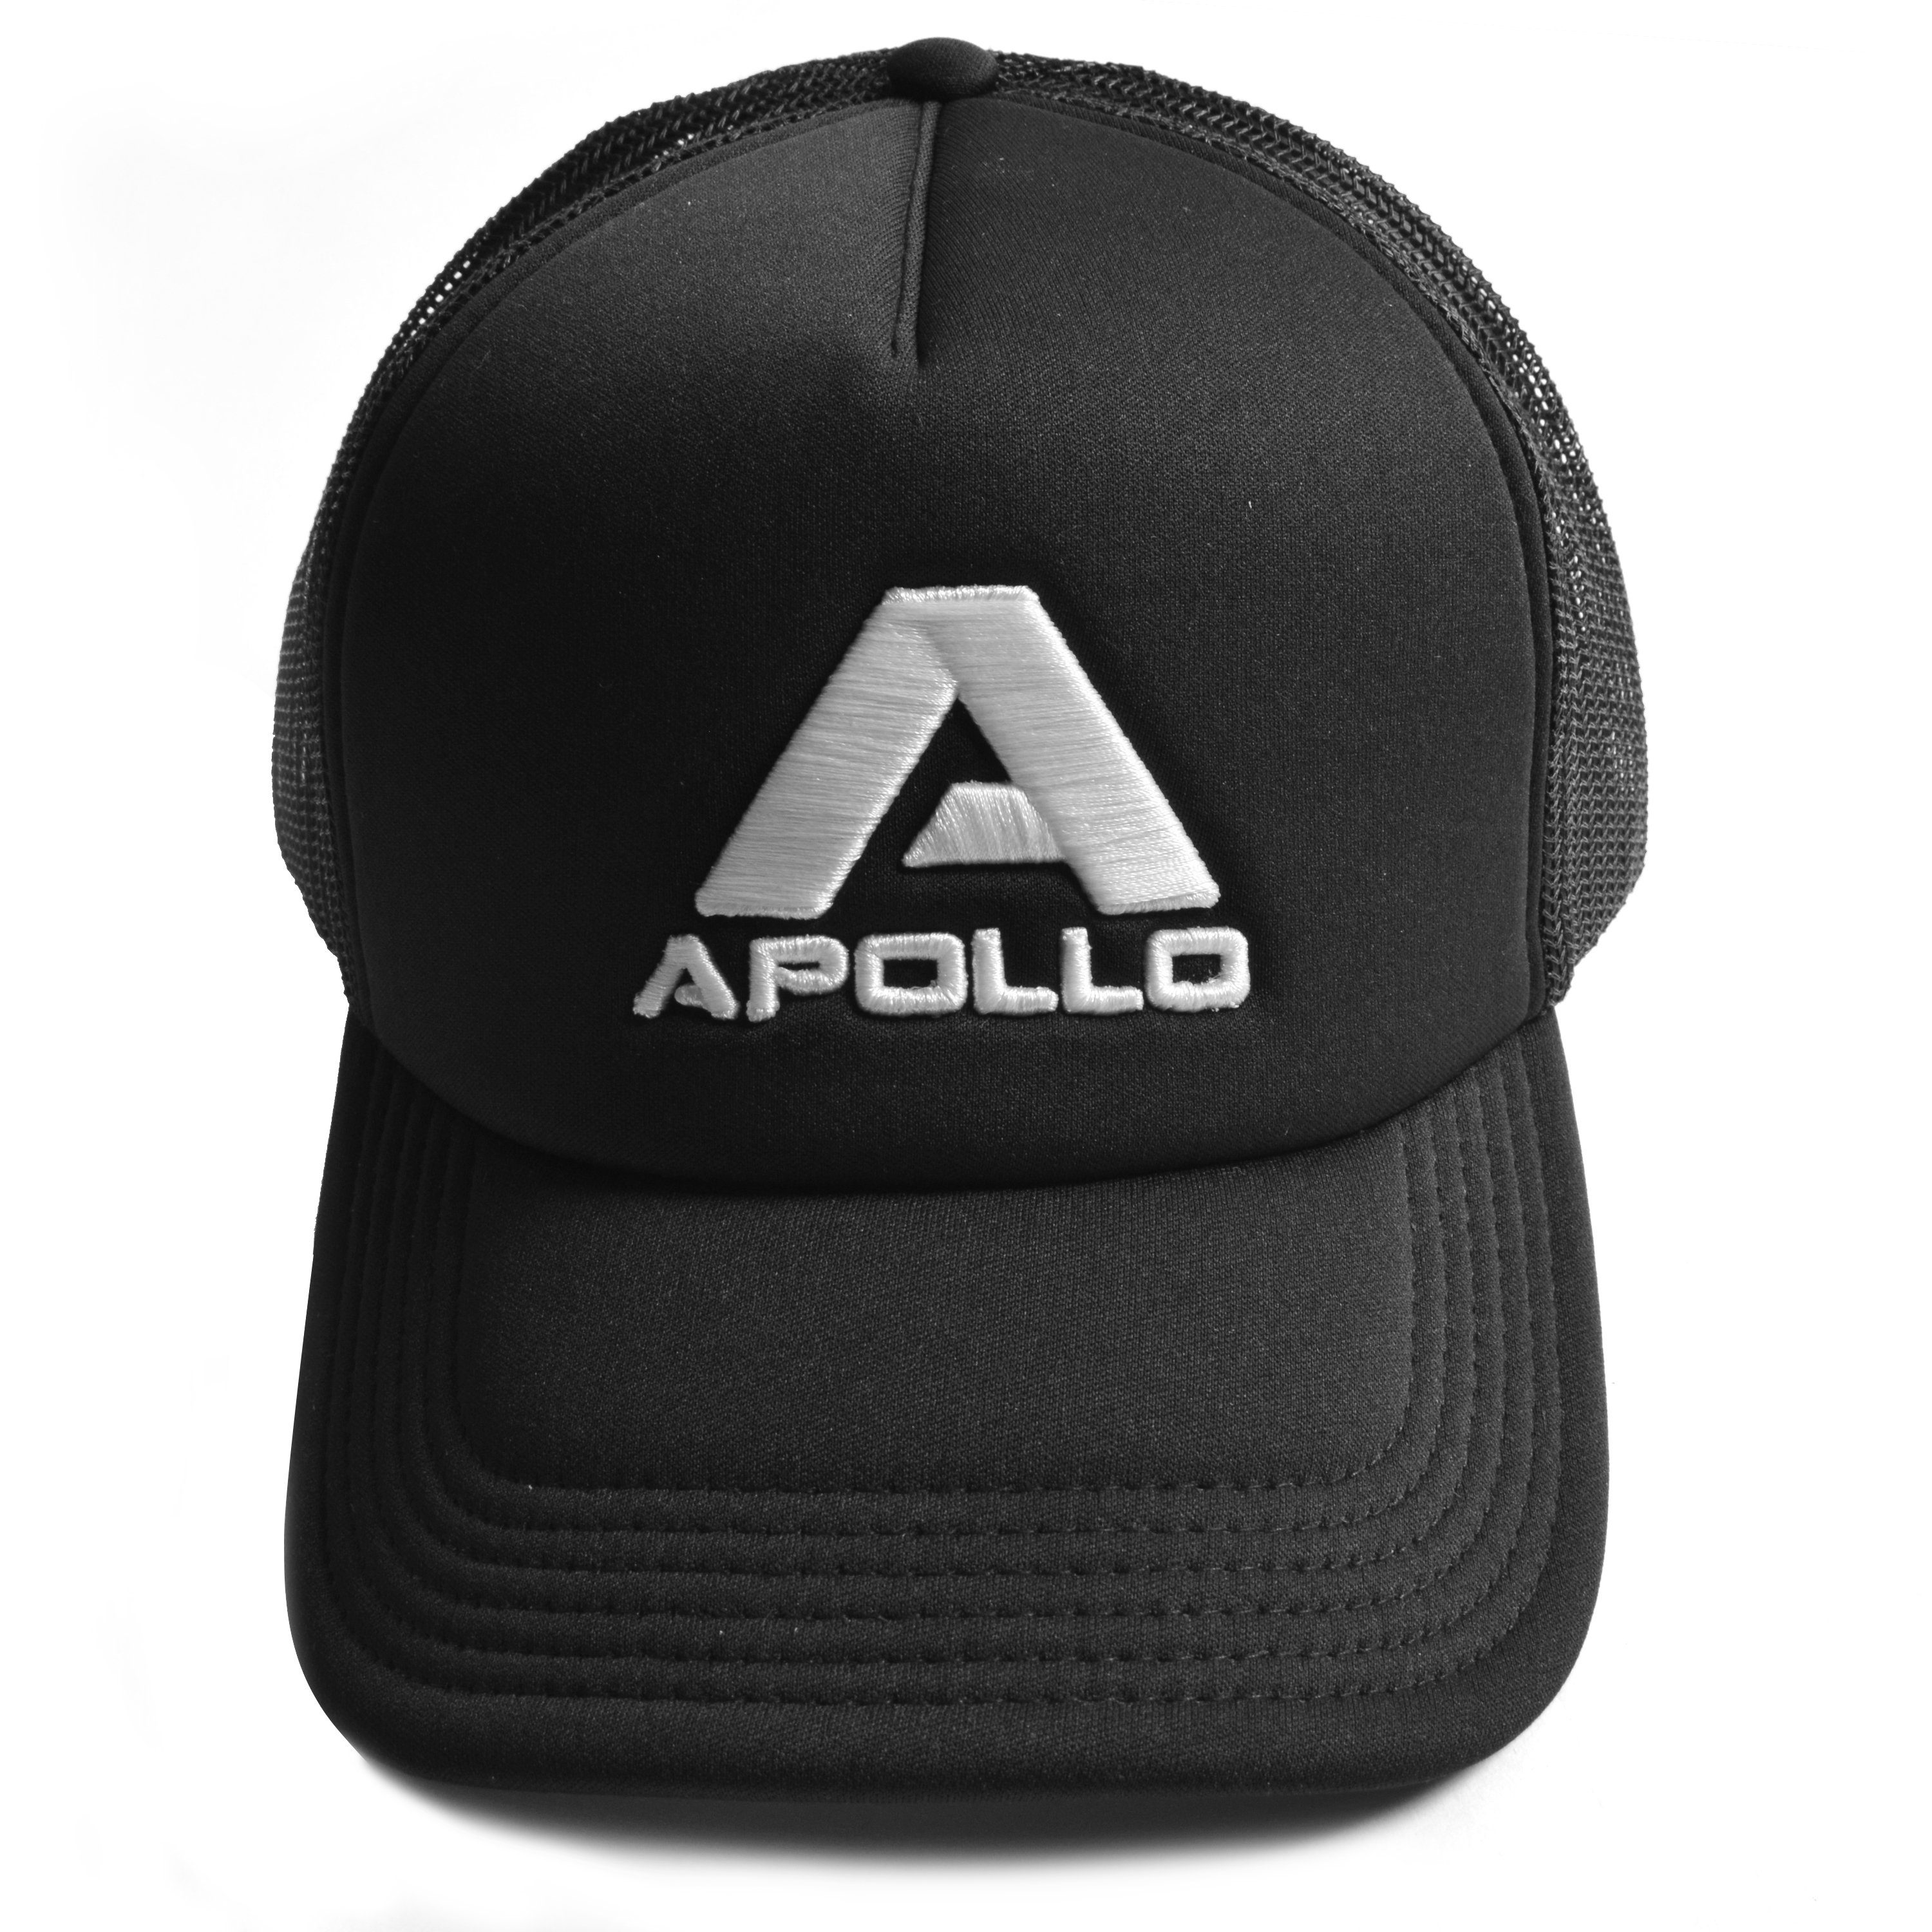 Apollo Trucker Cap Netzkappe schicke Basecap größenverstellbar für Kinder Truckercap und Erwachsene